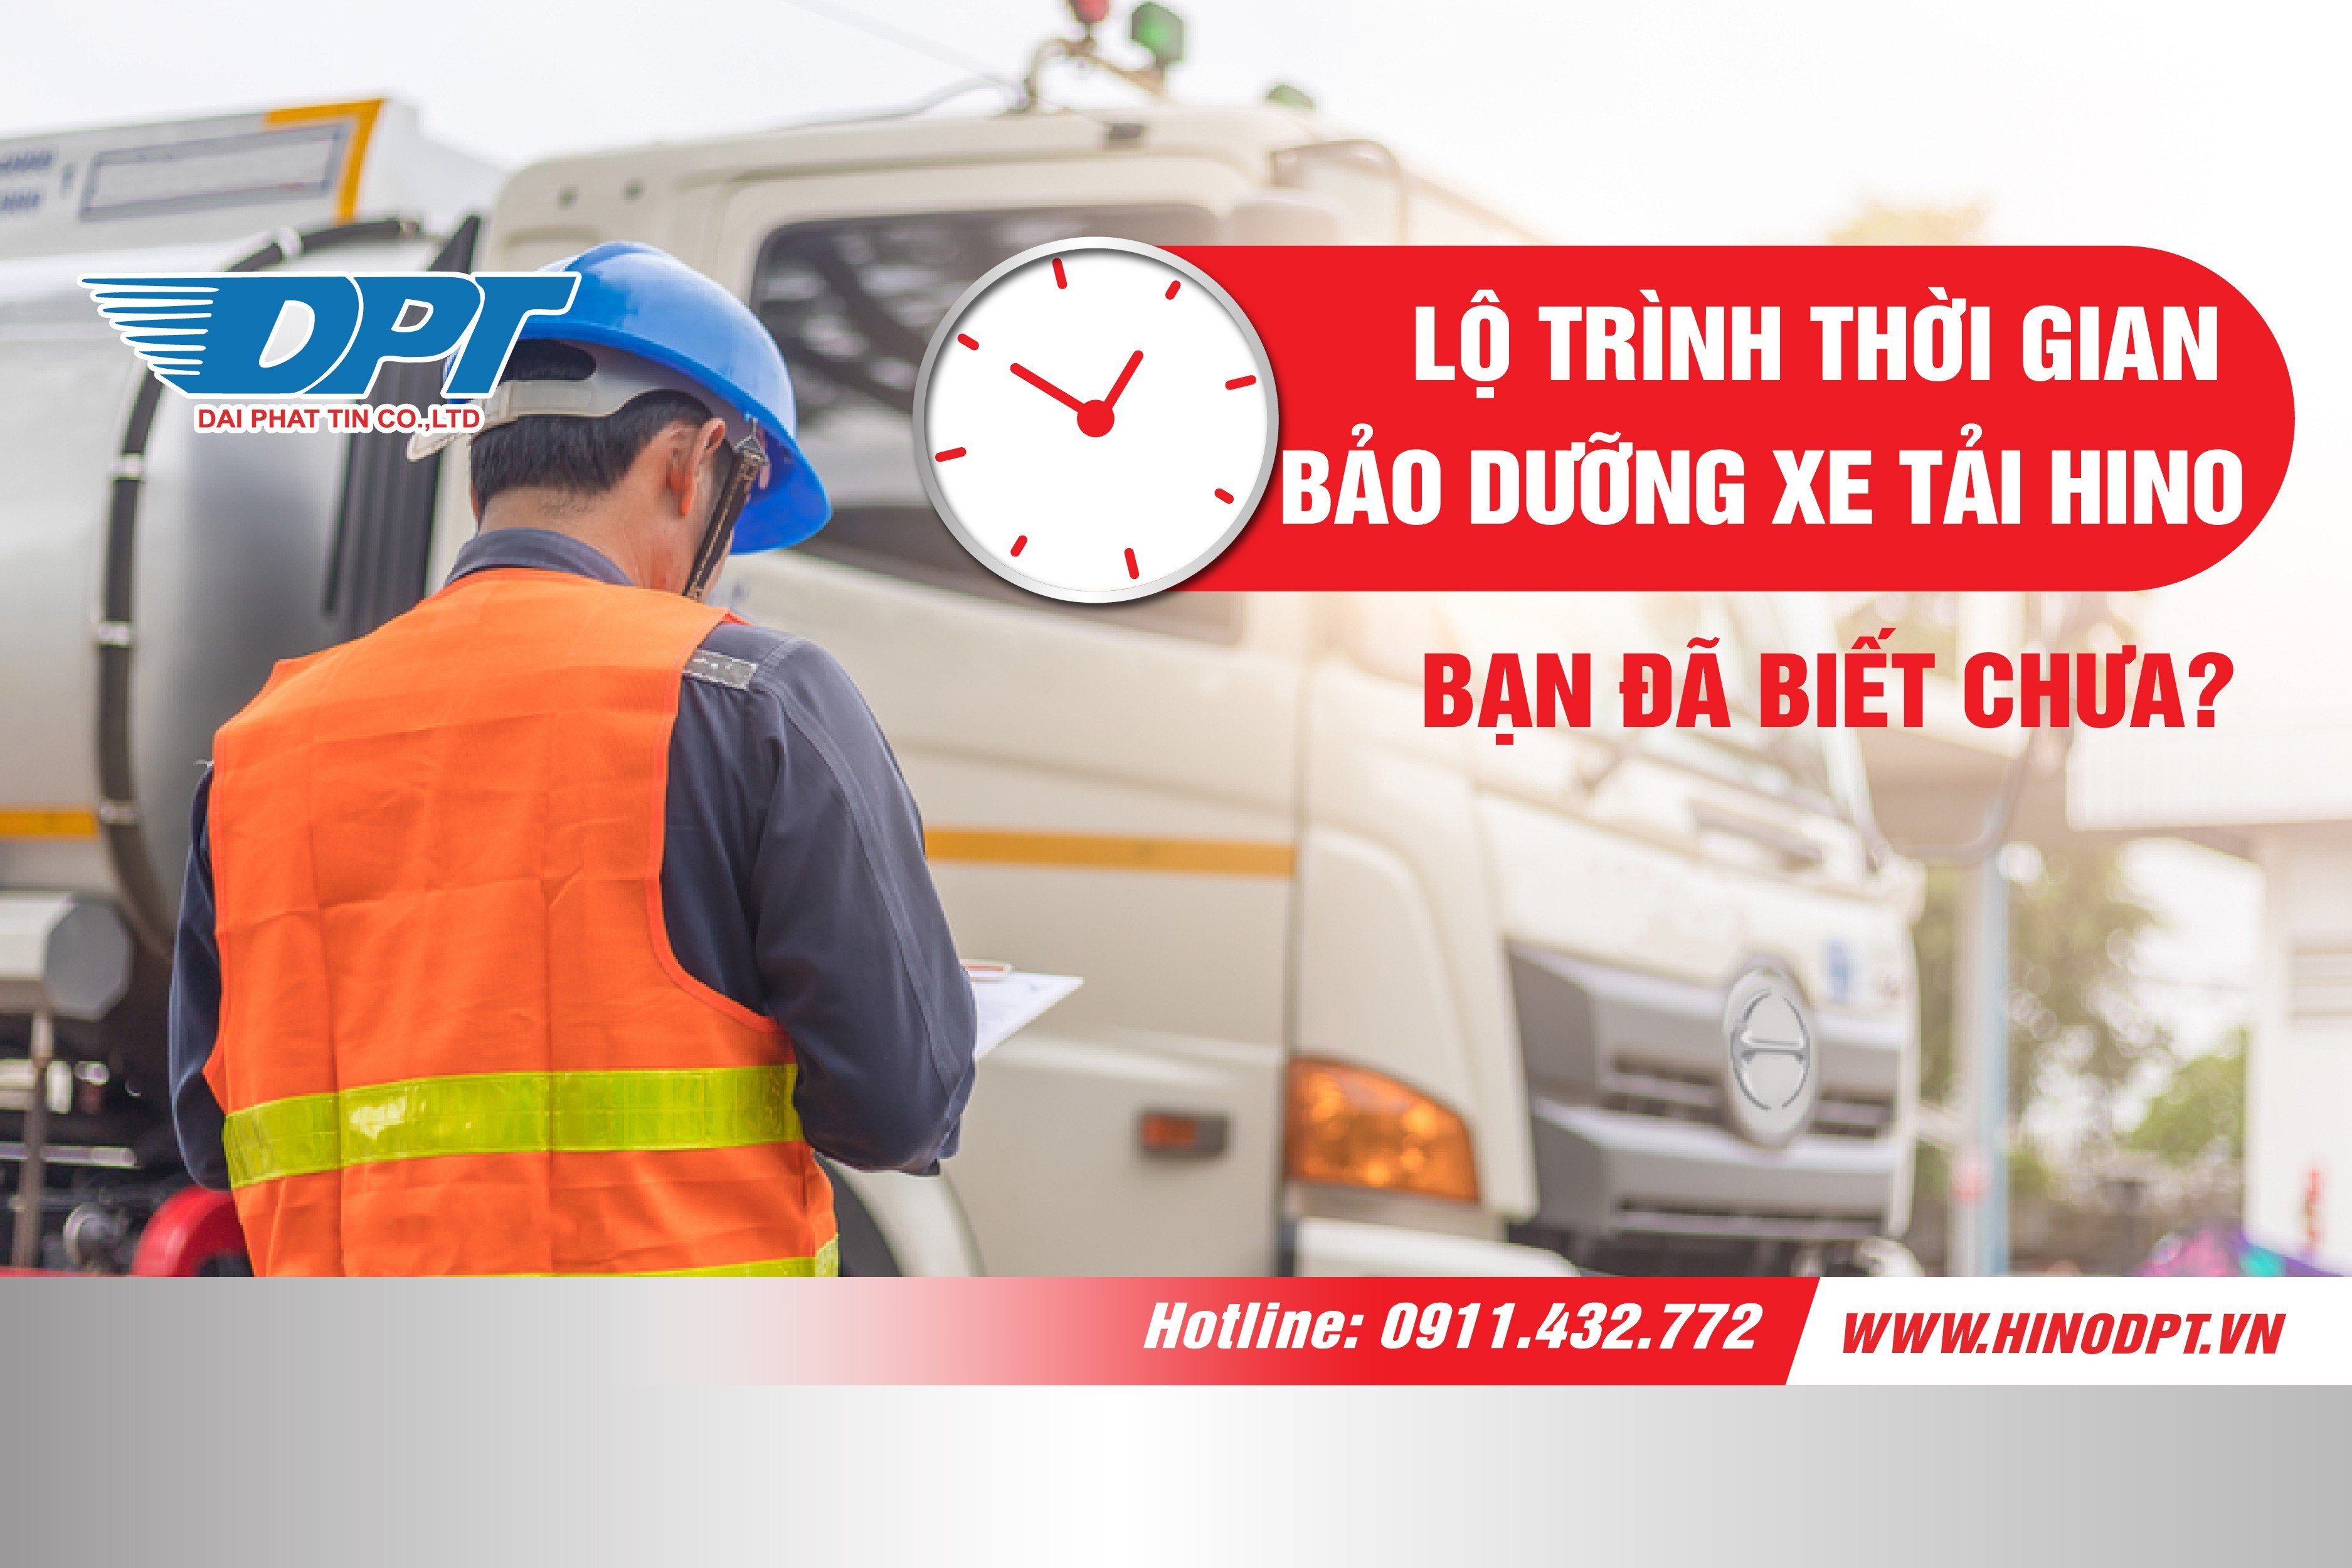 Lộ trình thời gian bảo dưỡng xe tải hino - bạn đã biết chưa?